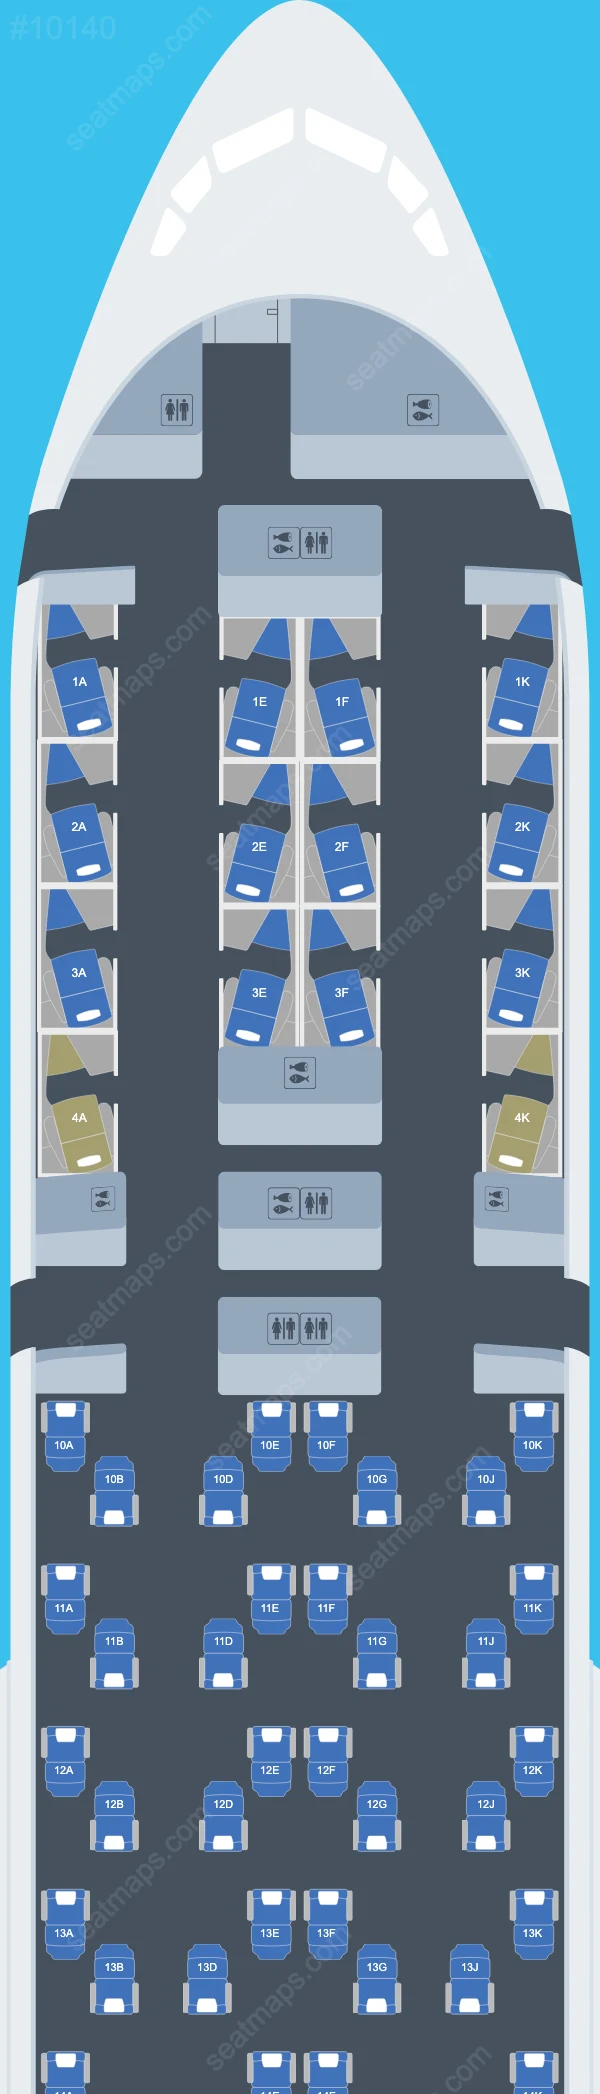 British Airways Boeing 777 Seat Maps 777-200 ER V.5